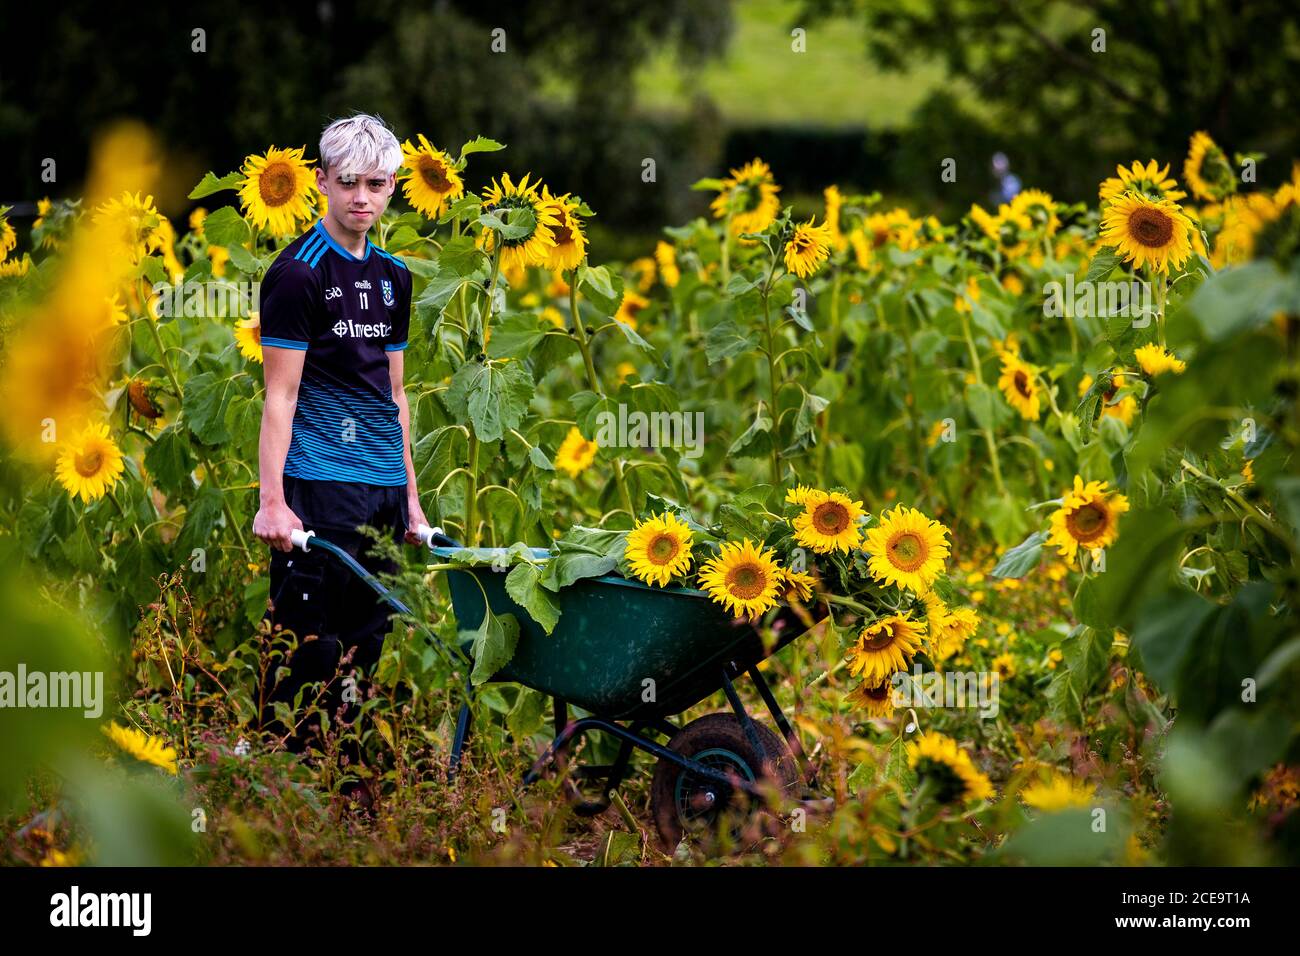 Ryan McAllister bewegt frisch geschnittene Sonnenblumen in einem Schubkarren auf dem Sunflower Field Portglenone, am Montag an den Feiertagen in Nordirland. Die Sonnenblume Feld wächst jährlich und die Besitzer bitten um eine kleine Gebühr, um mit Erlösen in diesem Jahr für gegen Arthritis geben. Stockfoto